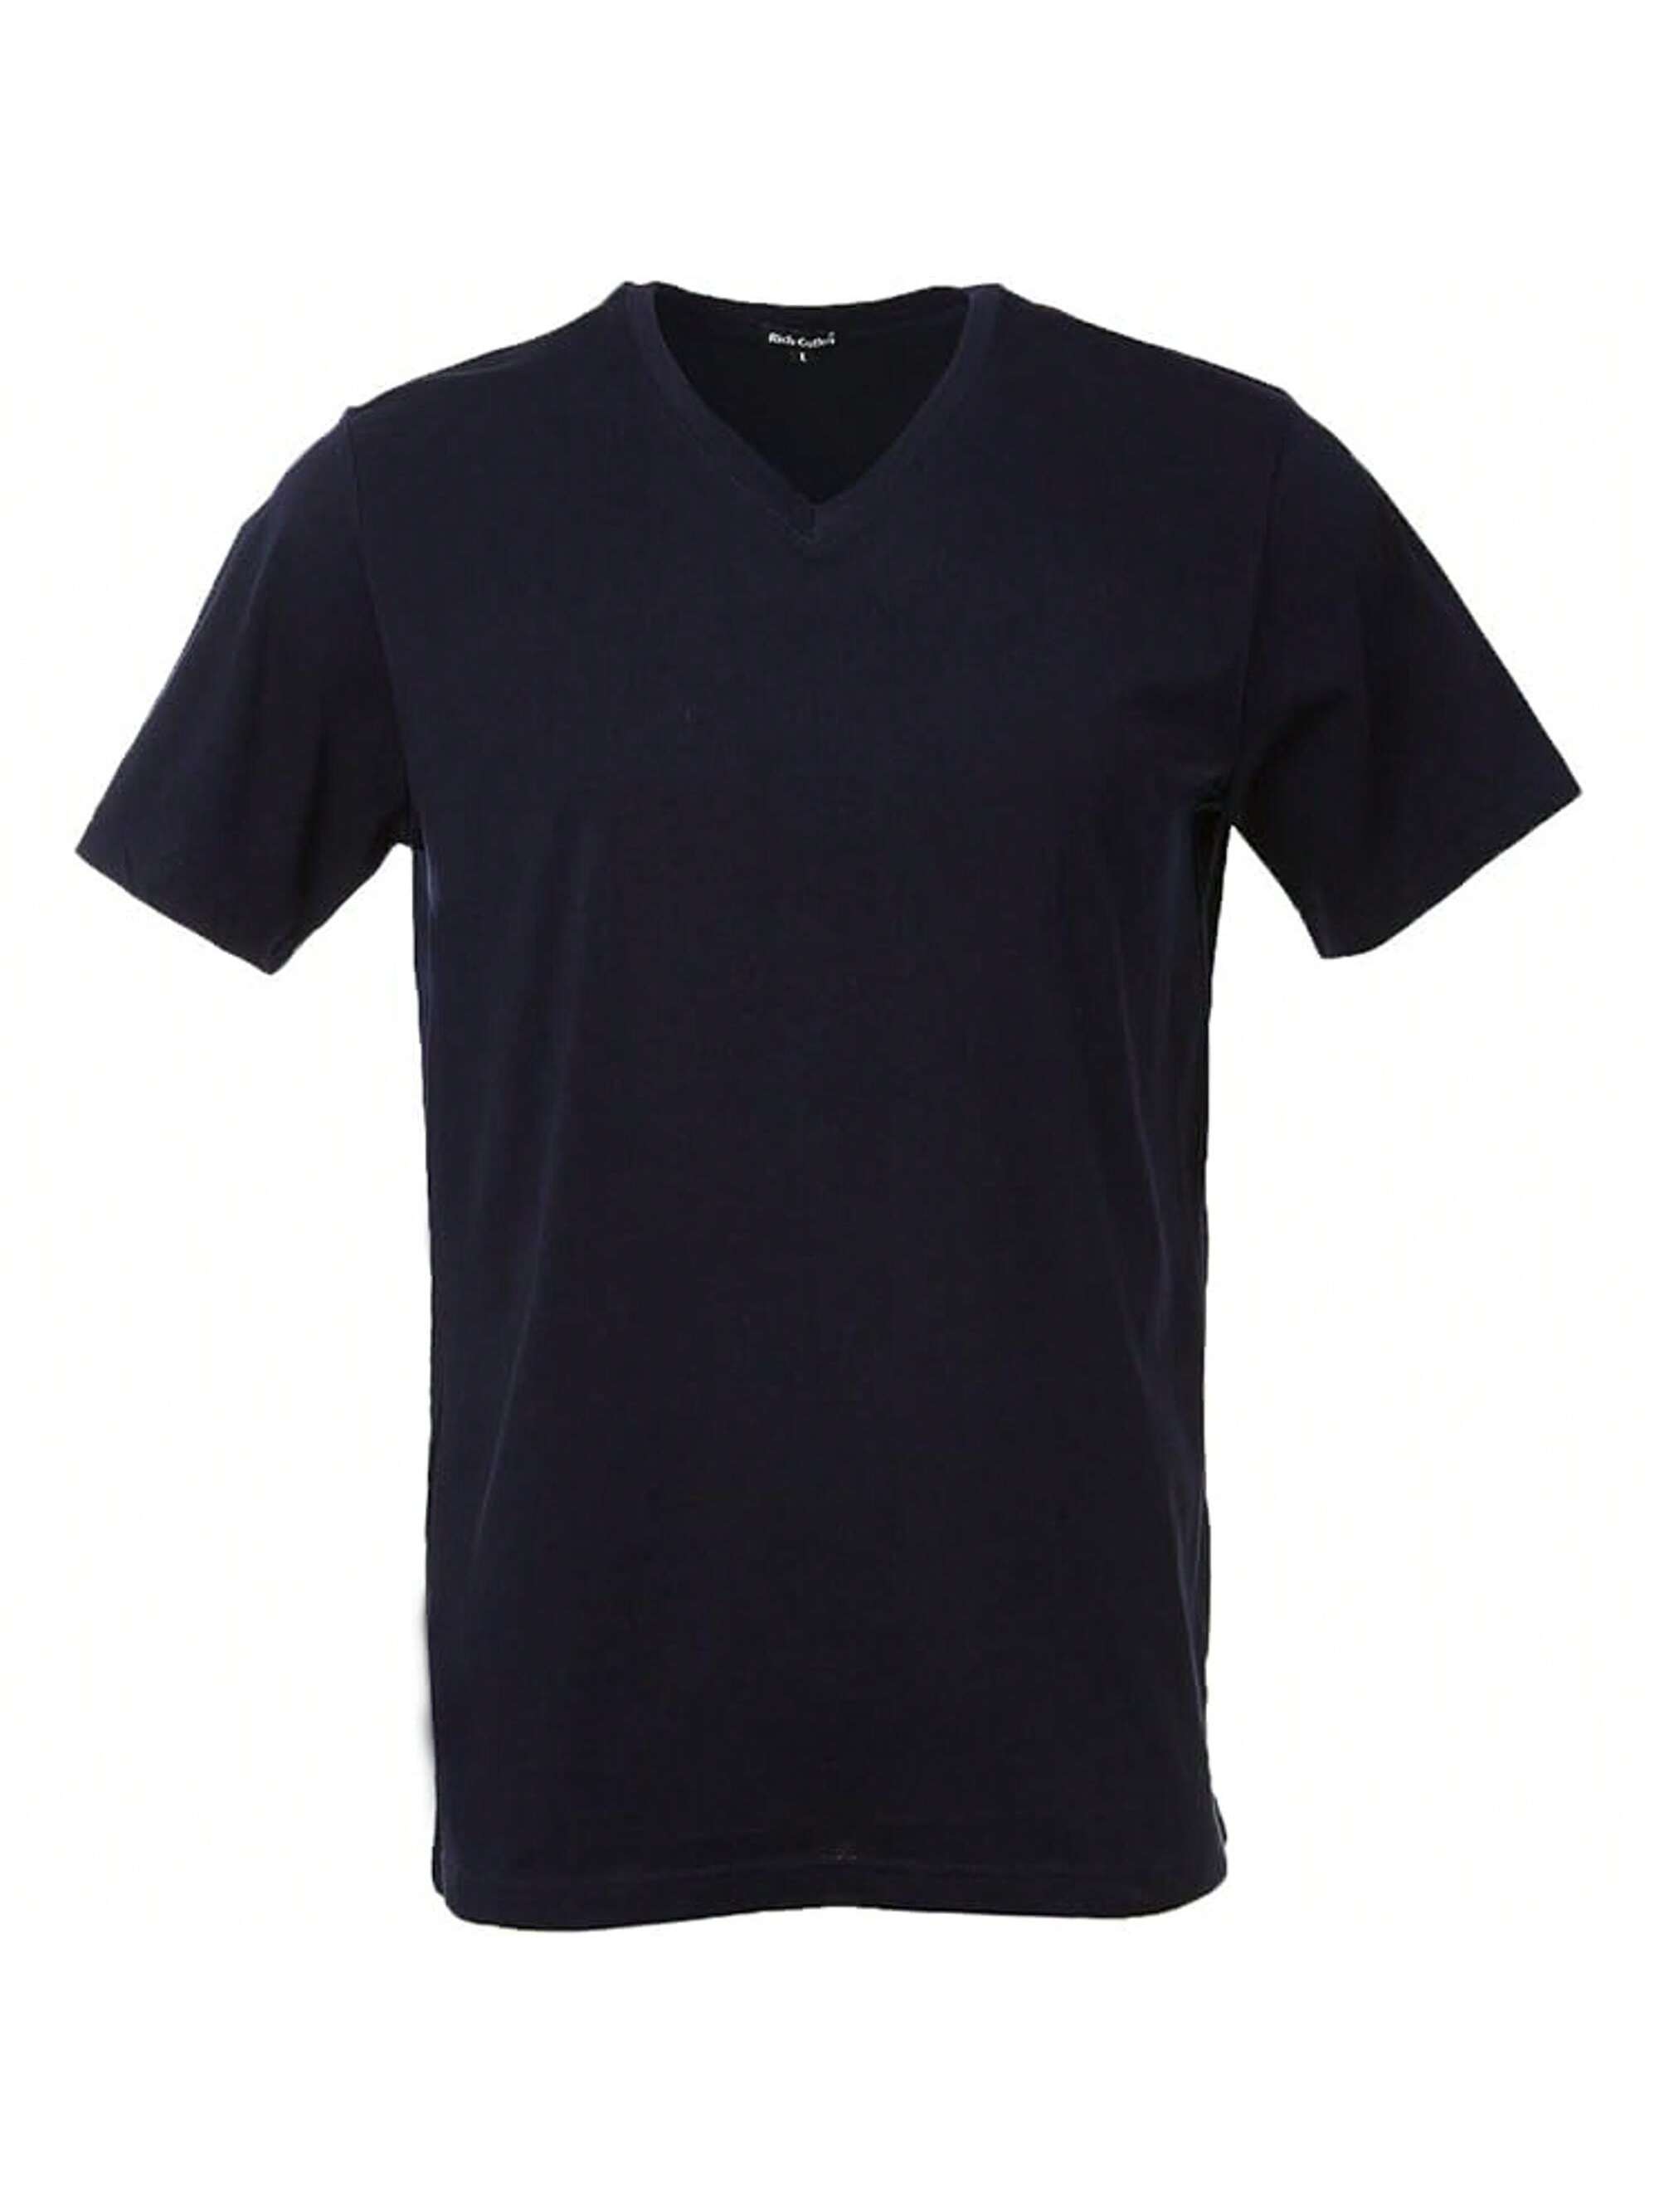 Мужская хлопковая футболка премиум-класса с v-образным вырезом Rich Cotton BLK-M, военно-морской перчатки sherwood code v sr blk red 13